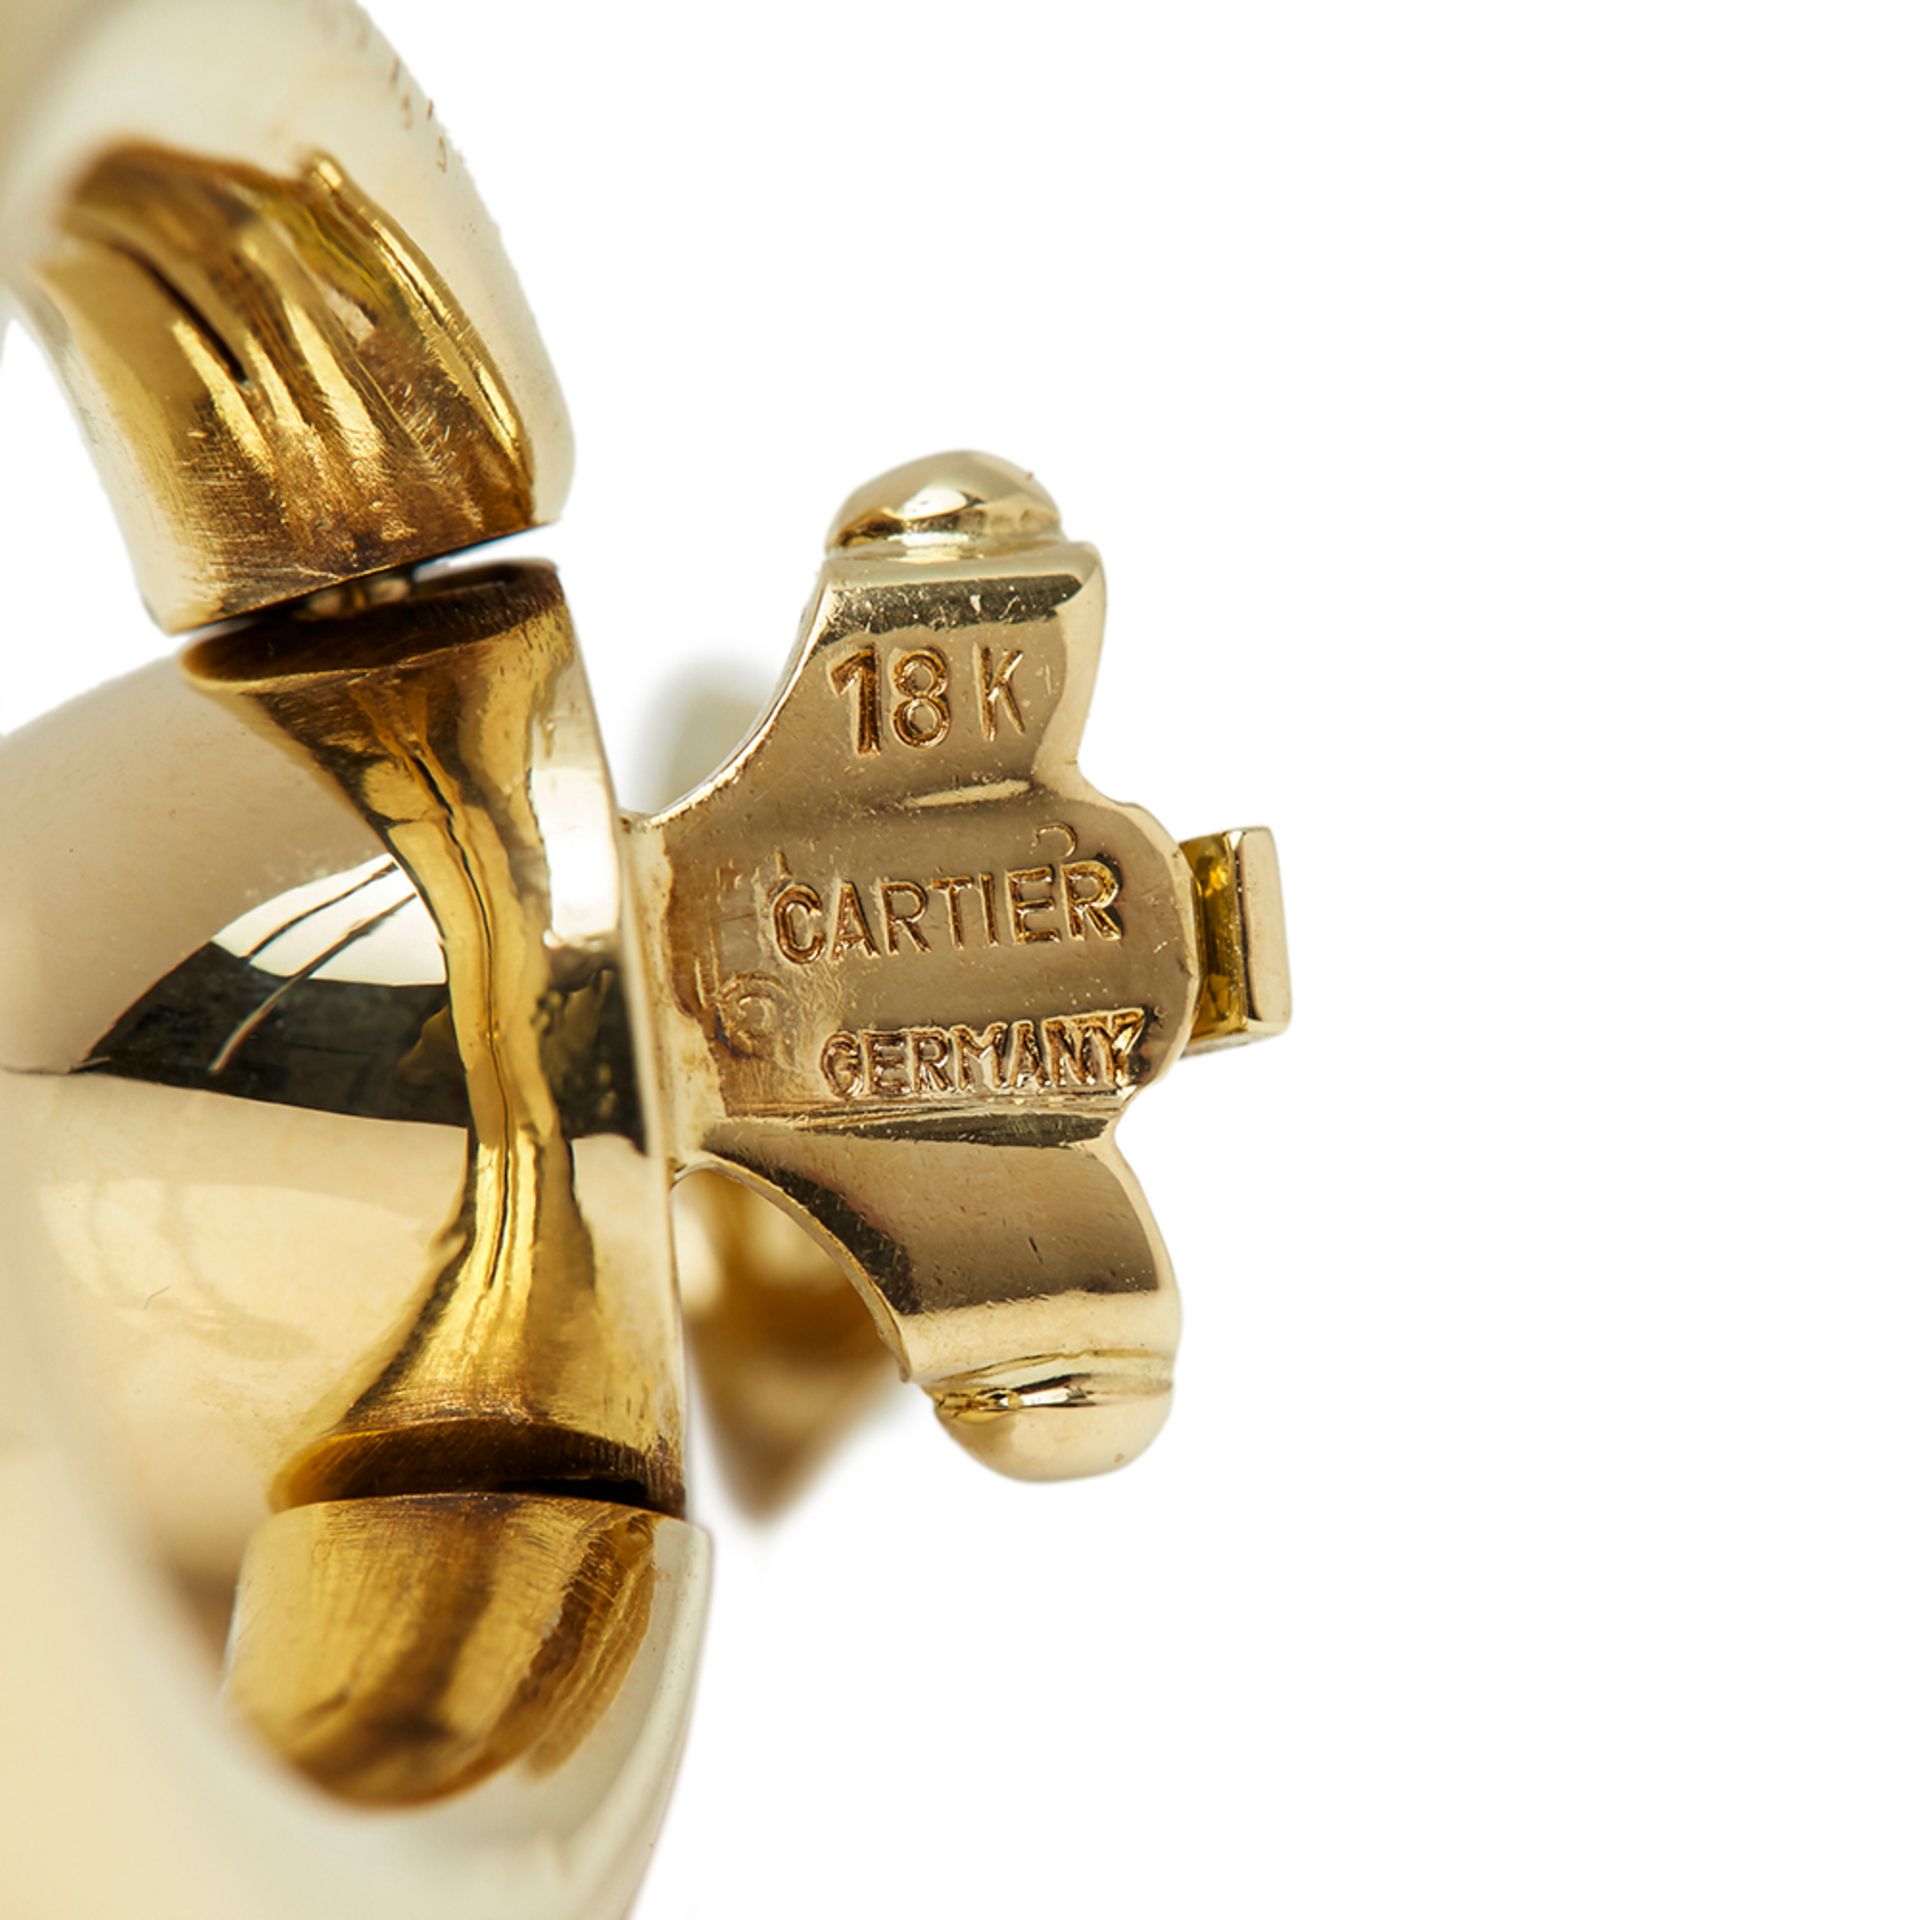 Cartier 18k Yellow Gold Door Knocker Earrings - Image 6 of 7